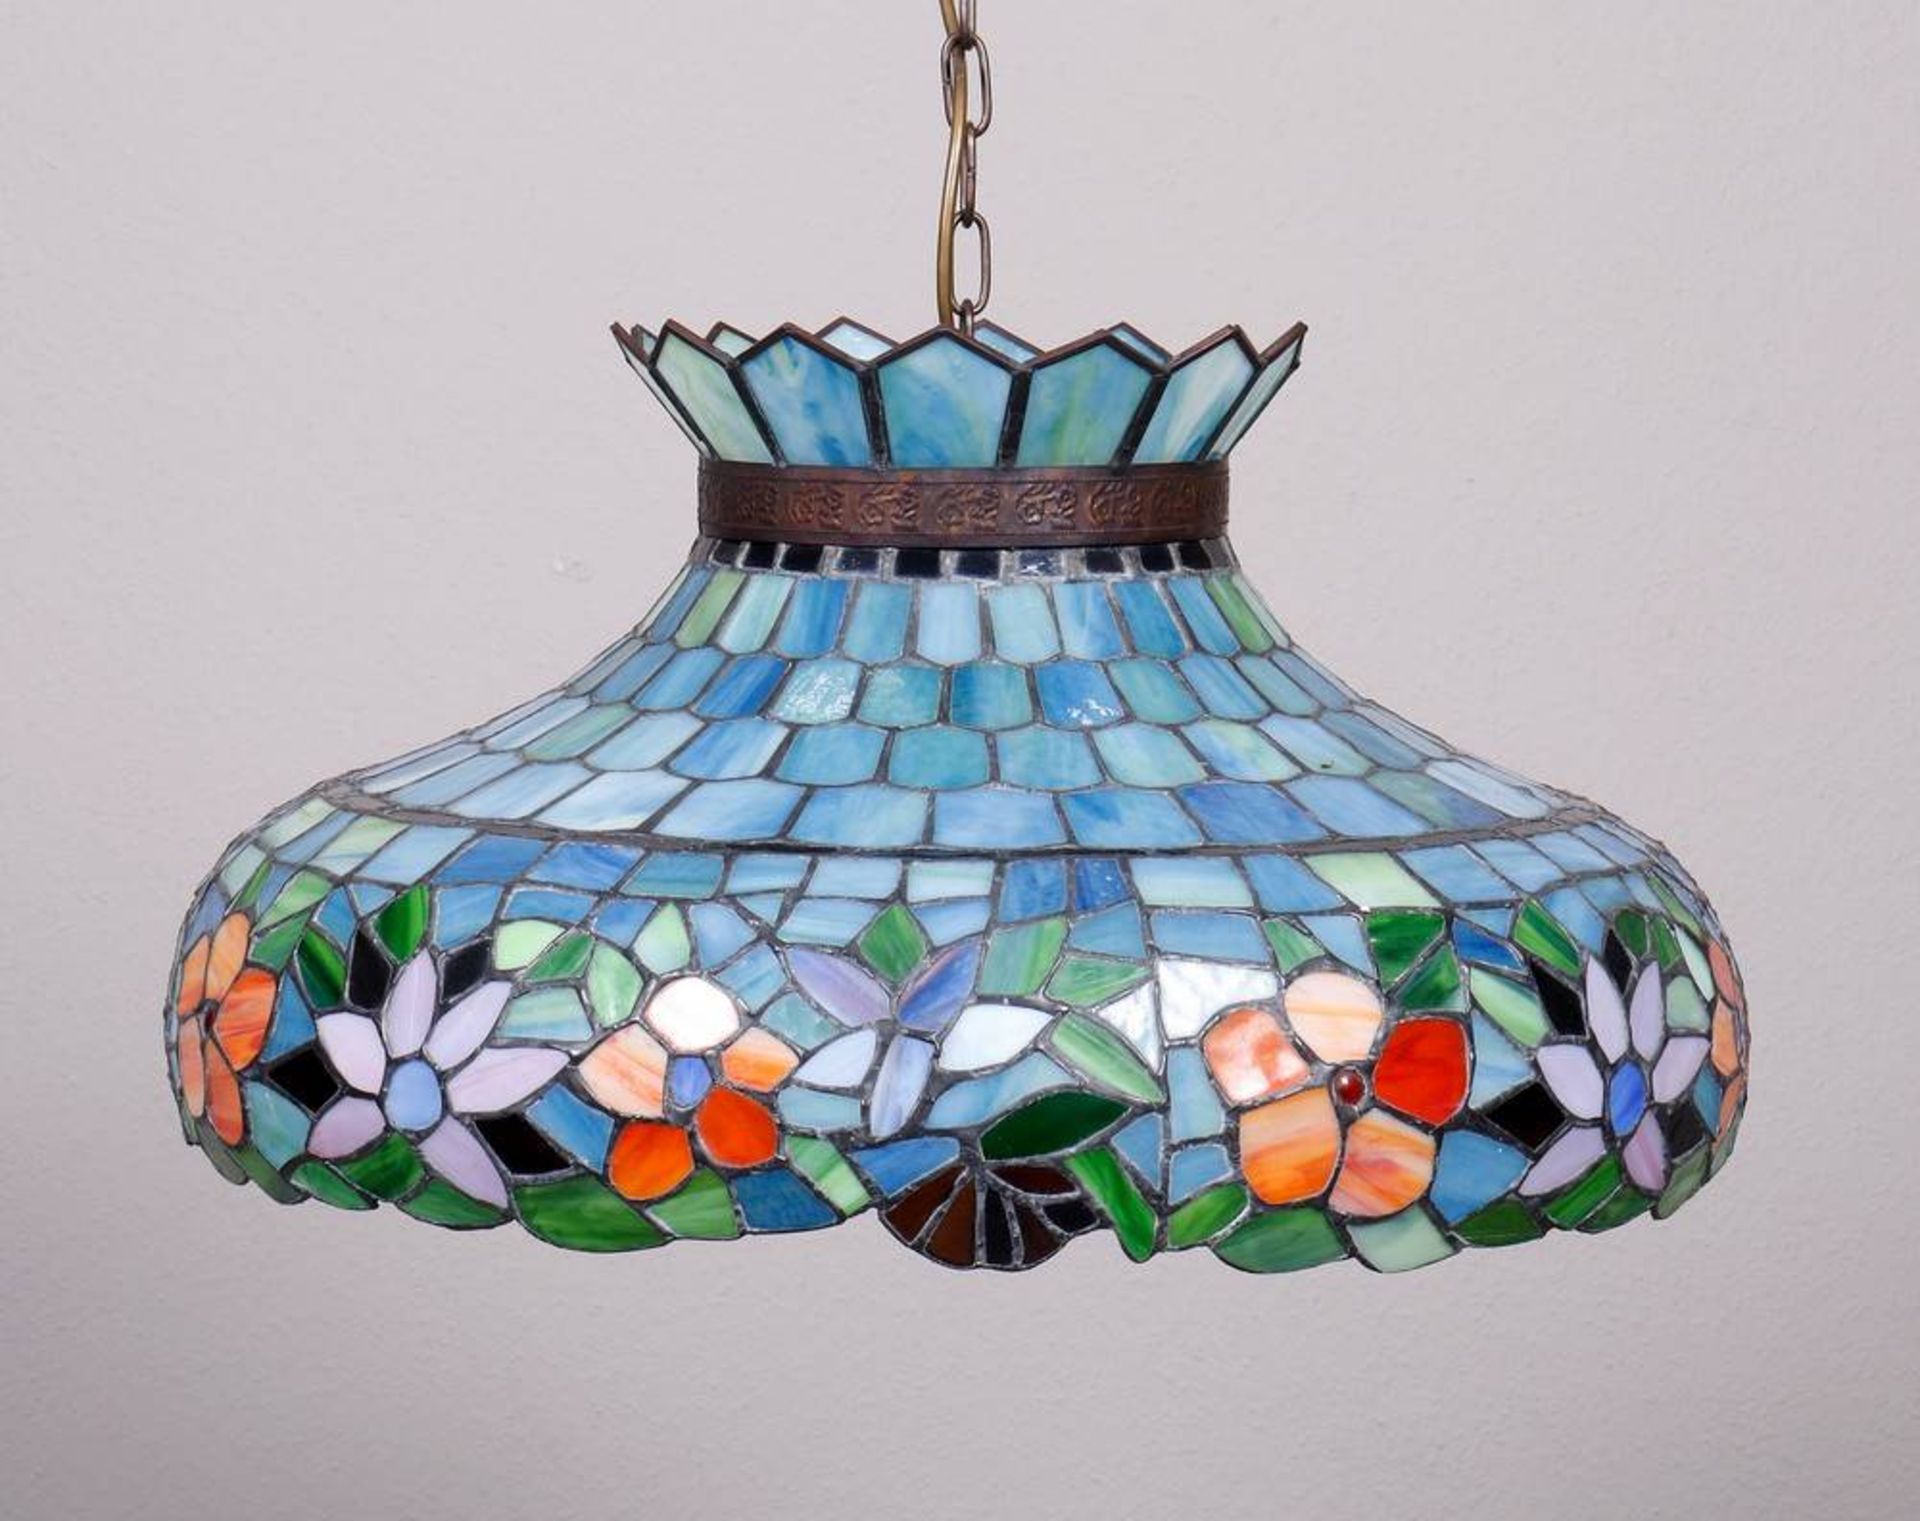 Jugendstil-Deckenlampe, Art Bent Glass Company, Artford, CT, USA, um 1900/10